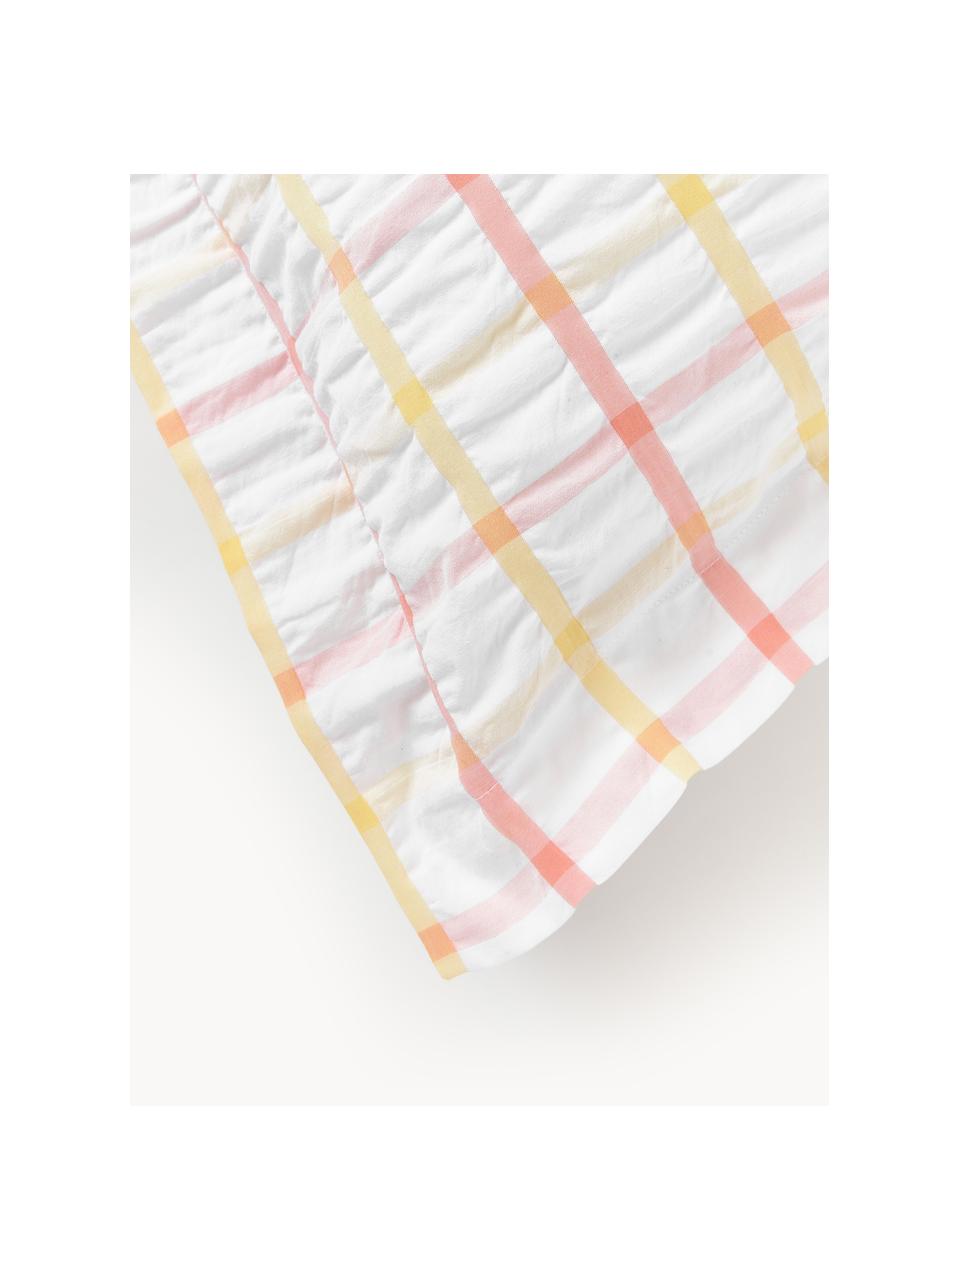 Taie d'oreiller en coton seersucker à carreaux Leonita, Blanc, jaune pâle, orange, larg. 50 x long. 70 cm